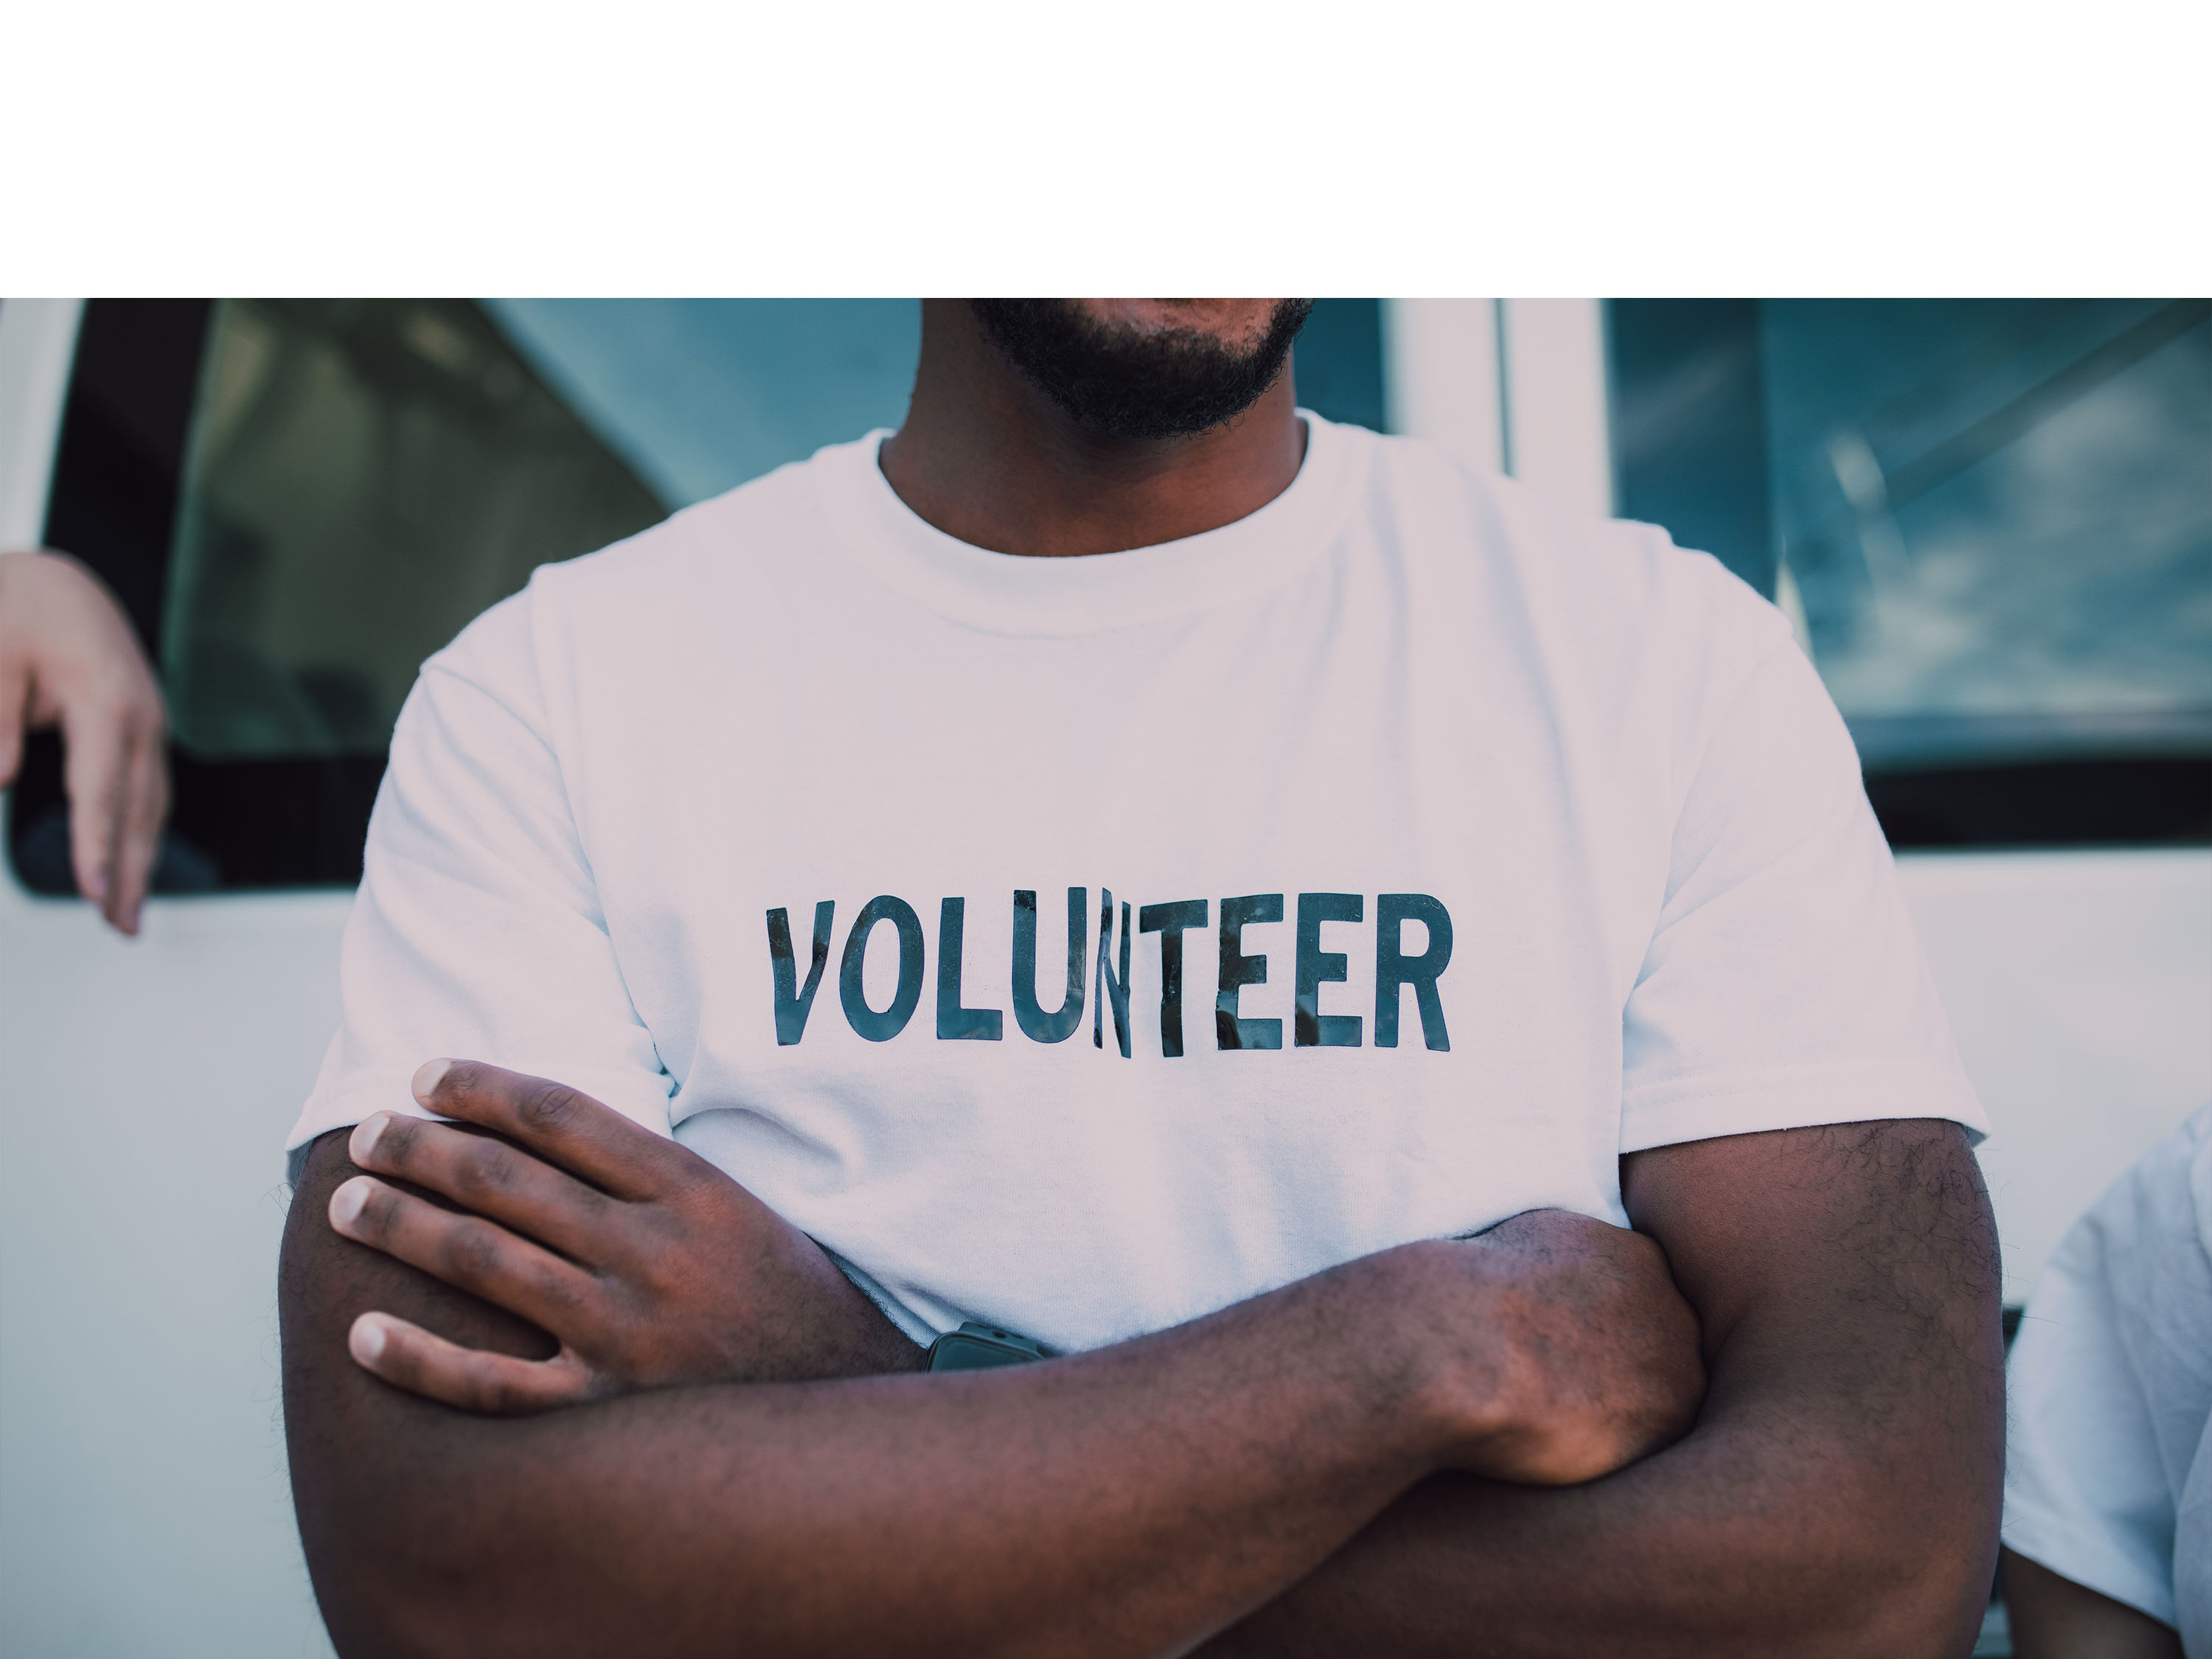 Man wearing shirt that says Volunteer